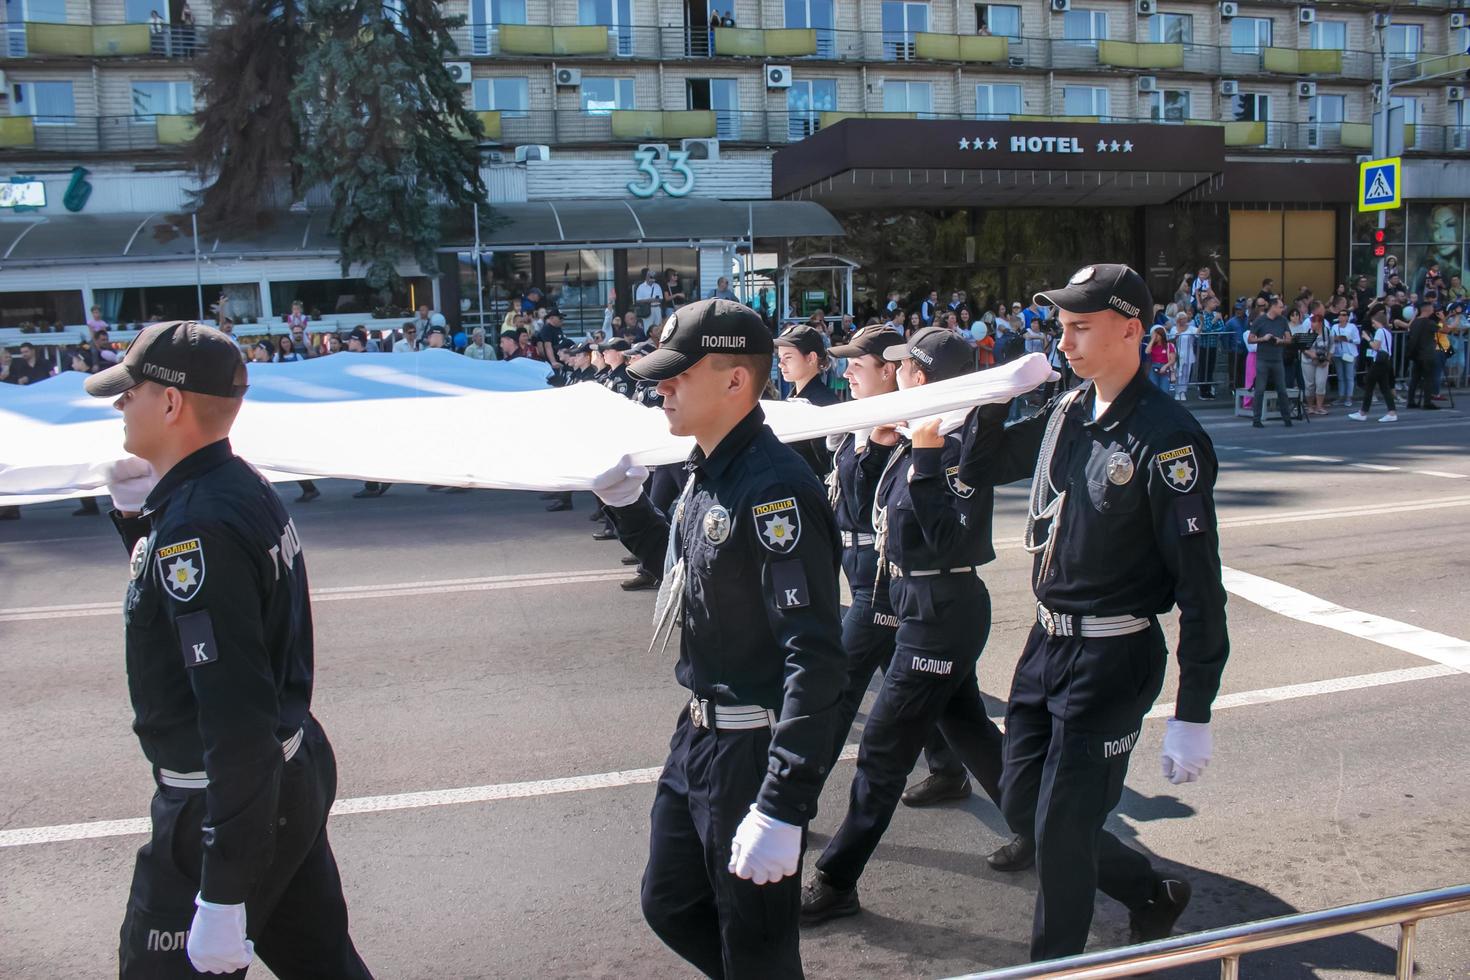 dnipro, ucrânia - 09.11.2021 cidadãos comemoram o dia da cidade. policiais carregam uma bandeira festiva. foto